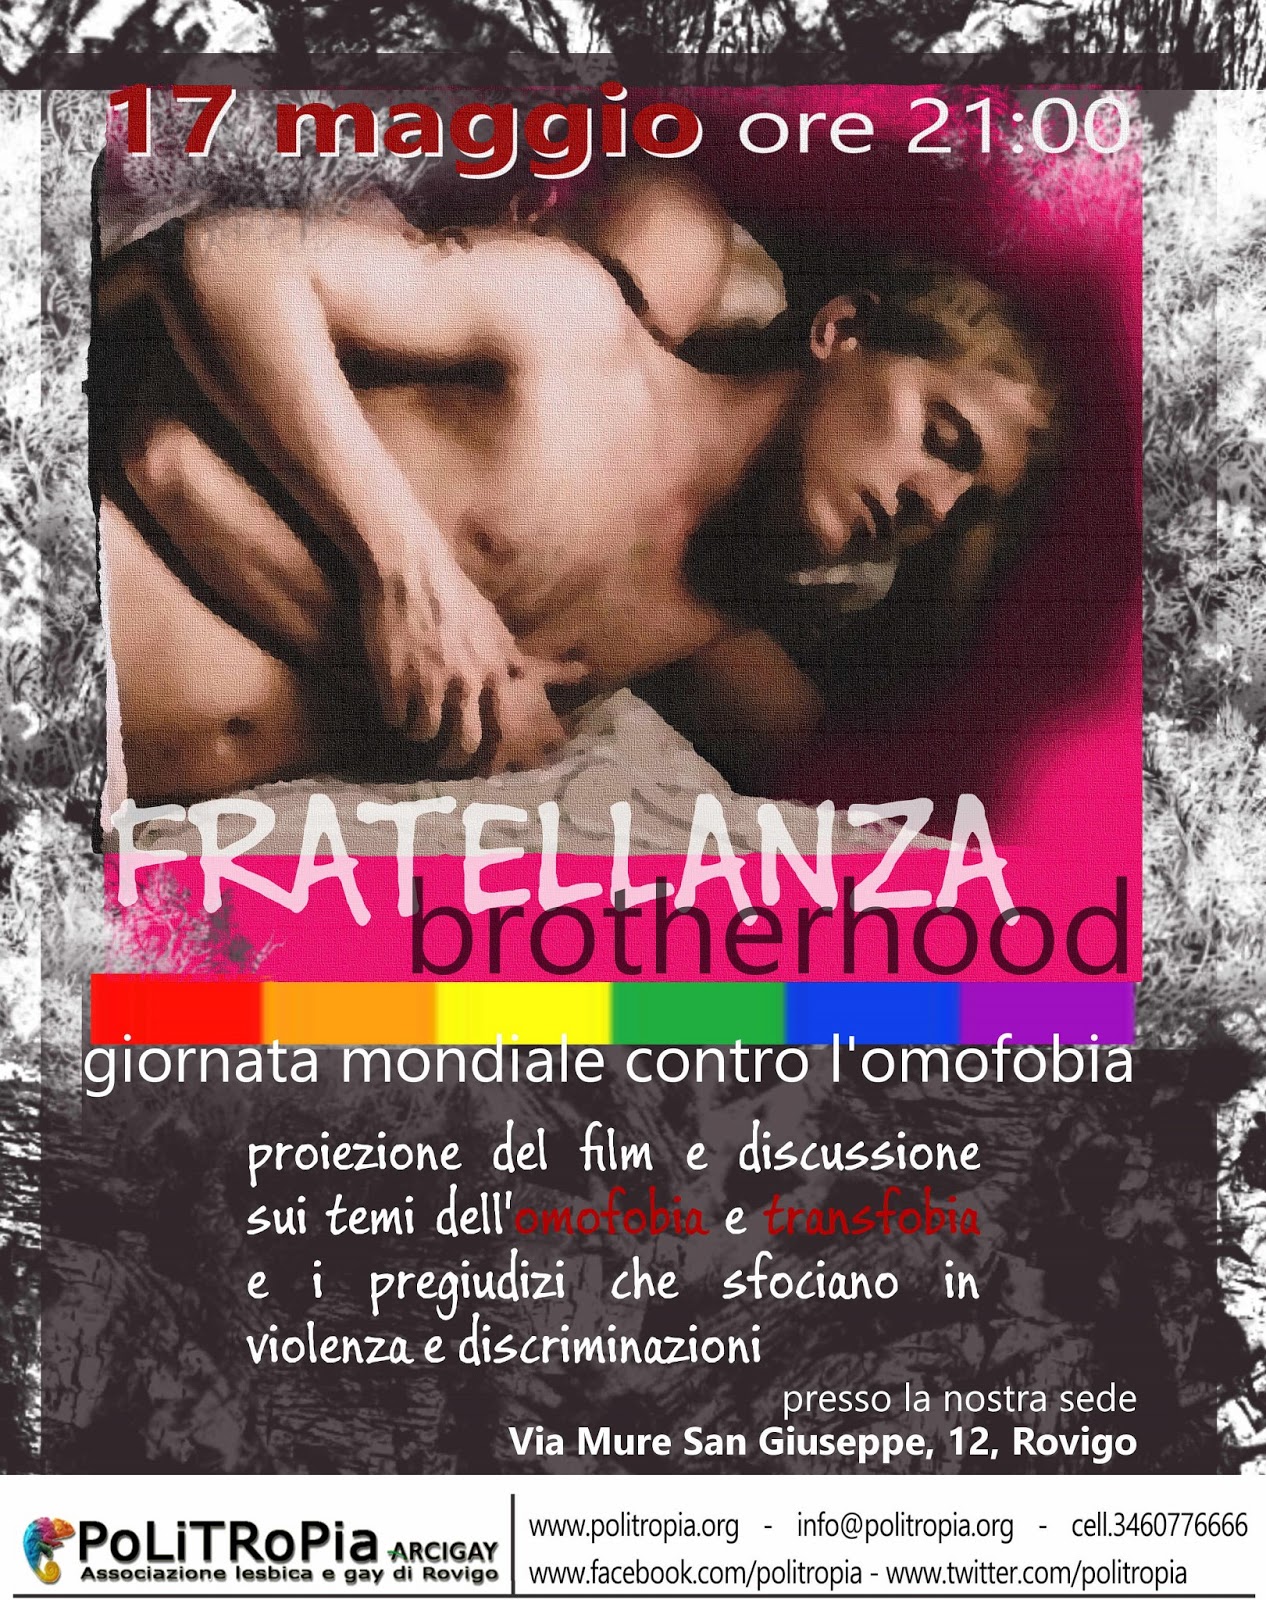 COMUNICATO STAMPA ROVIGO - 17 MAGGIO, GIORNATA INTERNAZIONALE CONTRO L'OMOFOBIA E LA TRANSFOBIA  Omofobia+2013+fratellanza+brotherhoodok